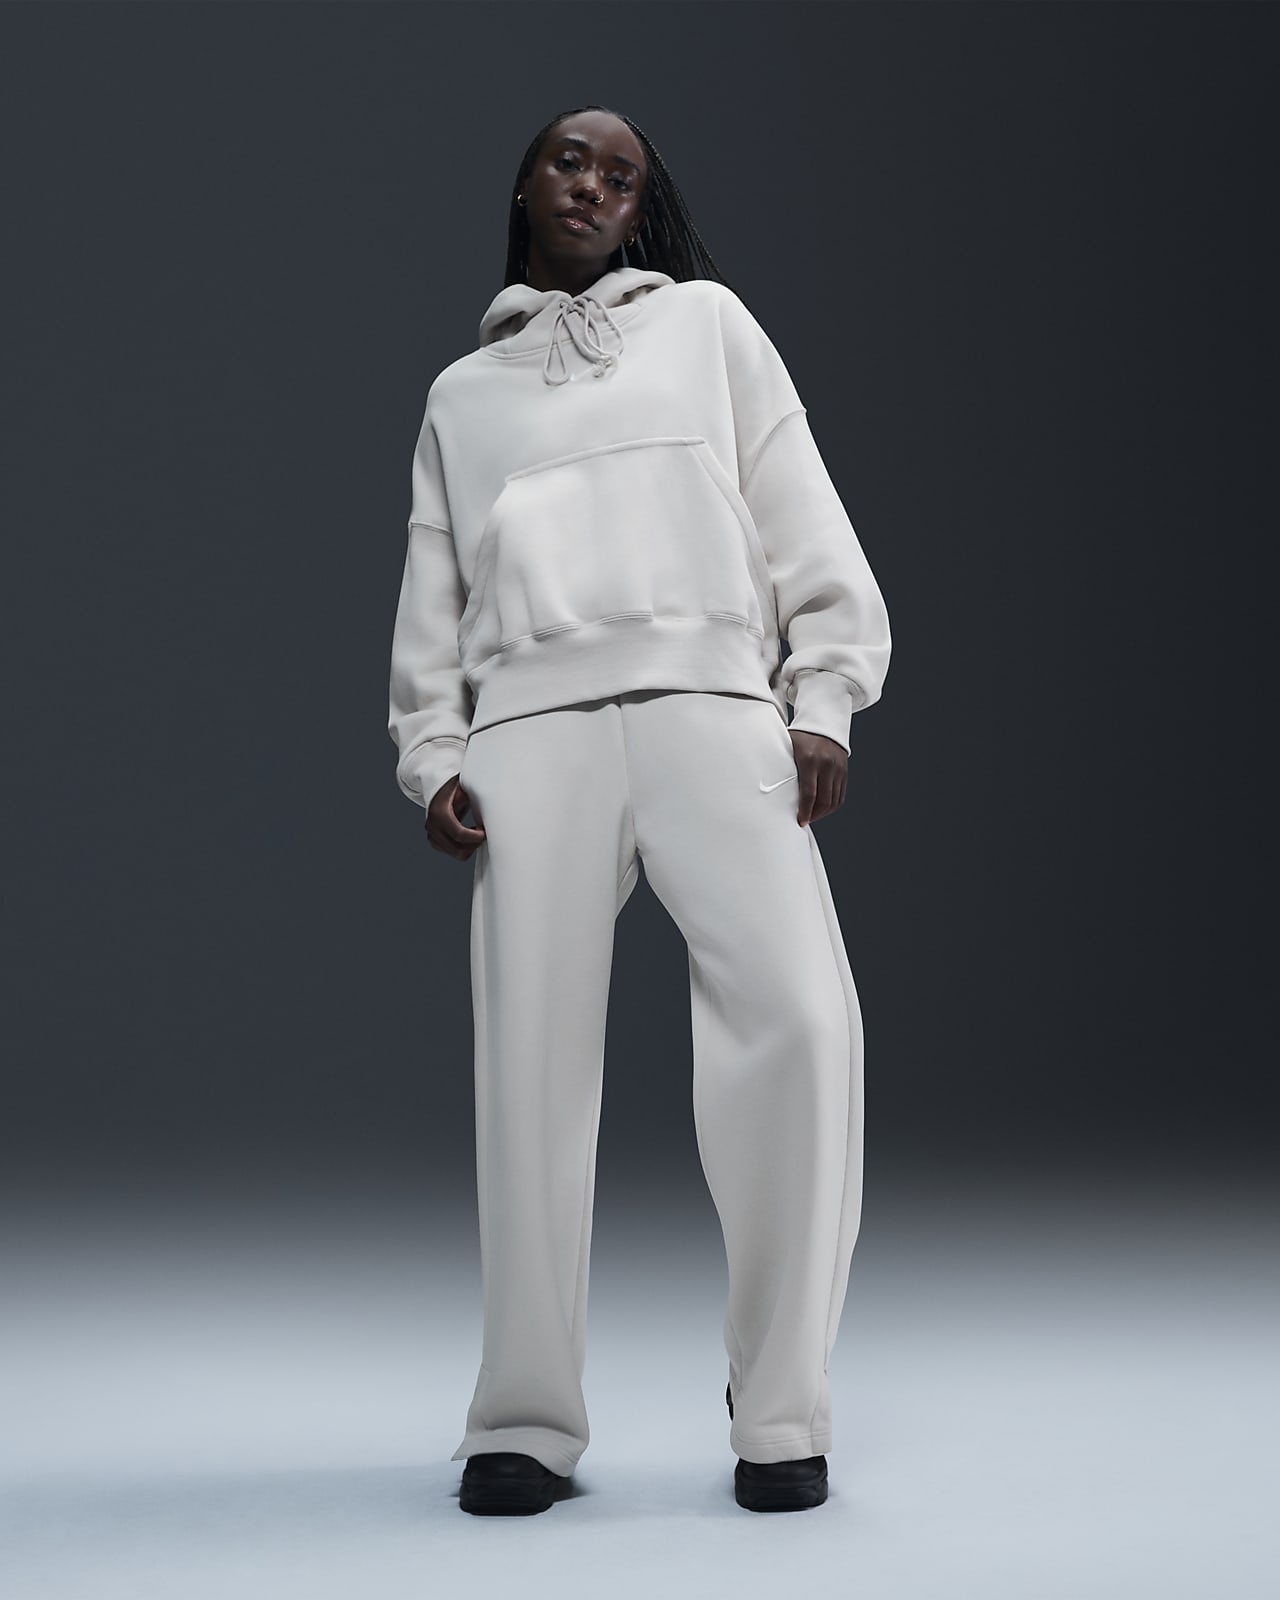 Damskie spodnie dresowe z wysokim stanem i szerokimi nogawkami Nike Sportswear Phoenix Fleece